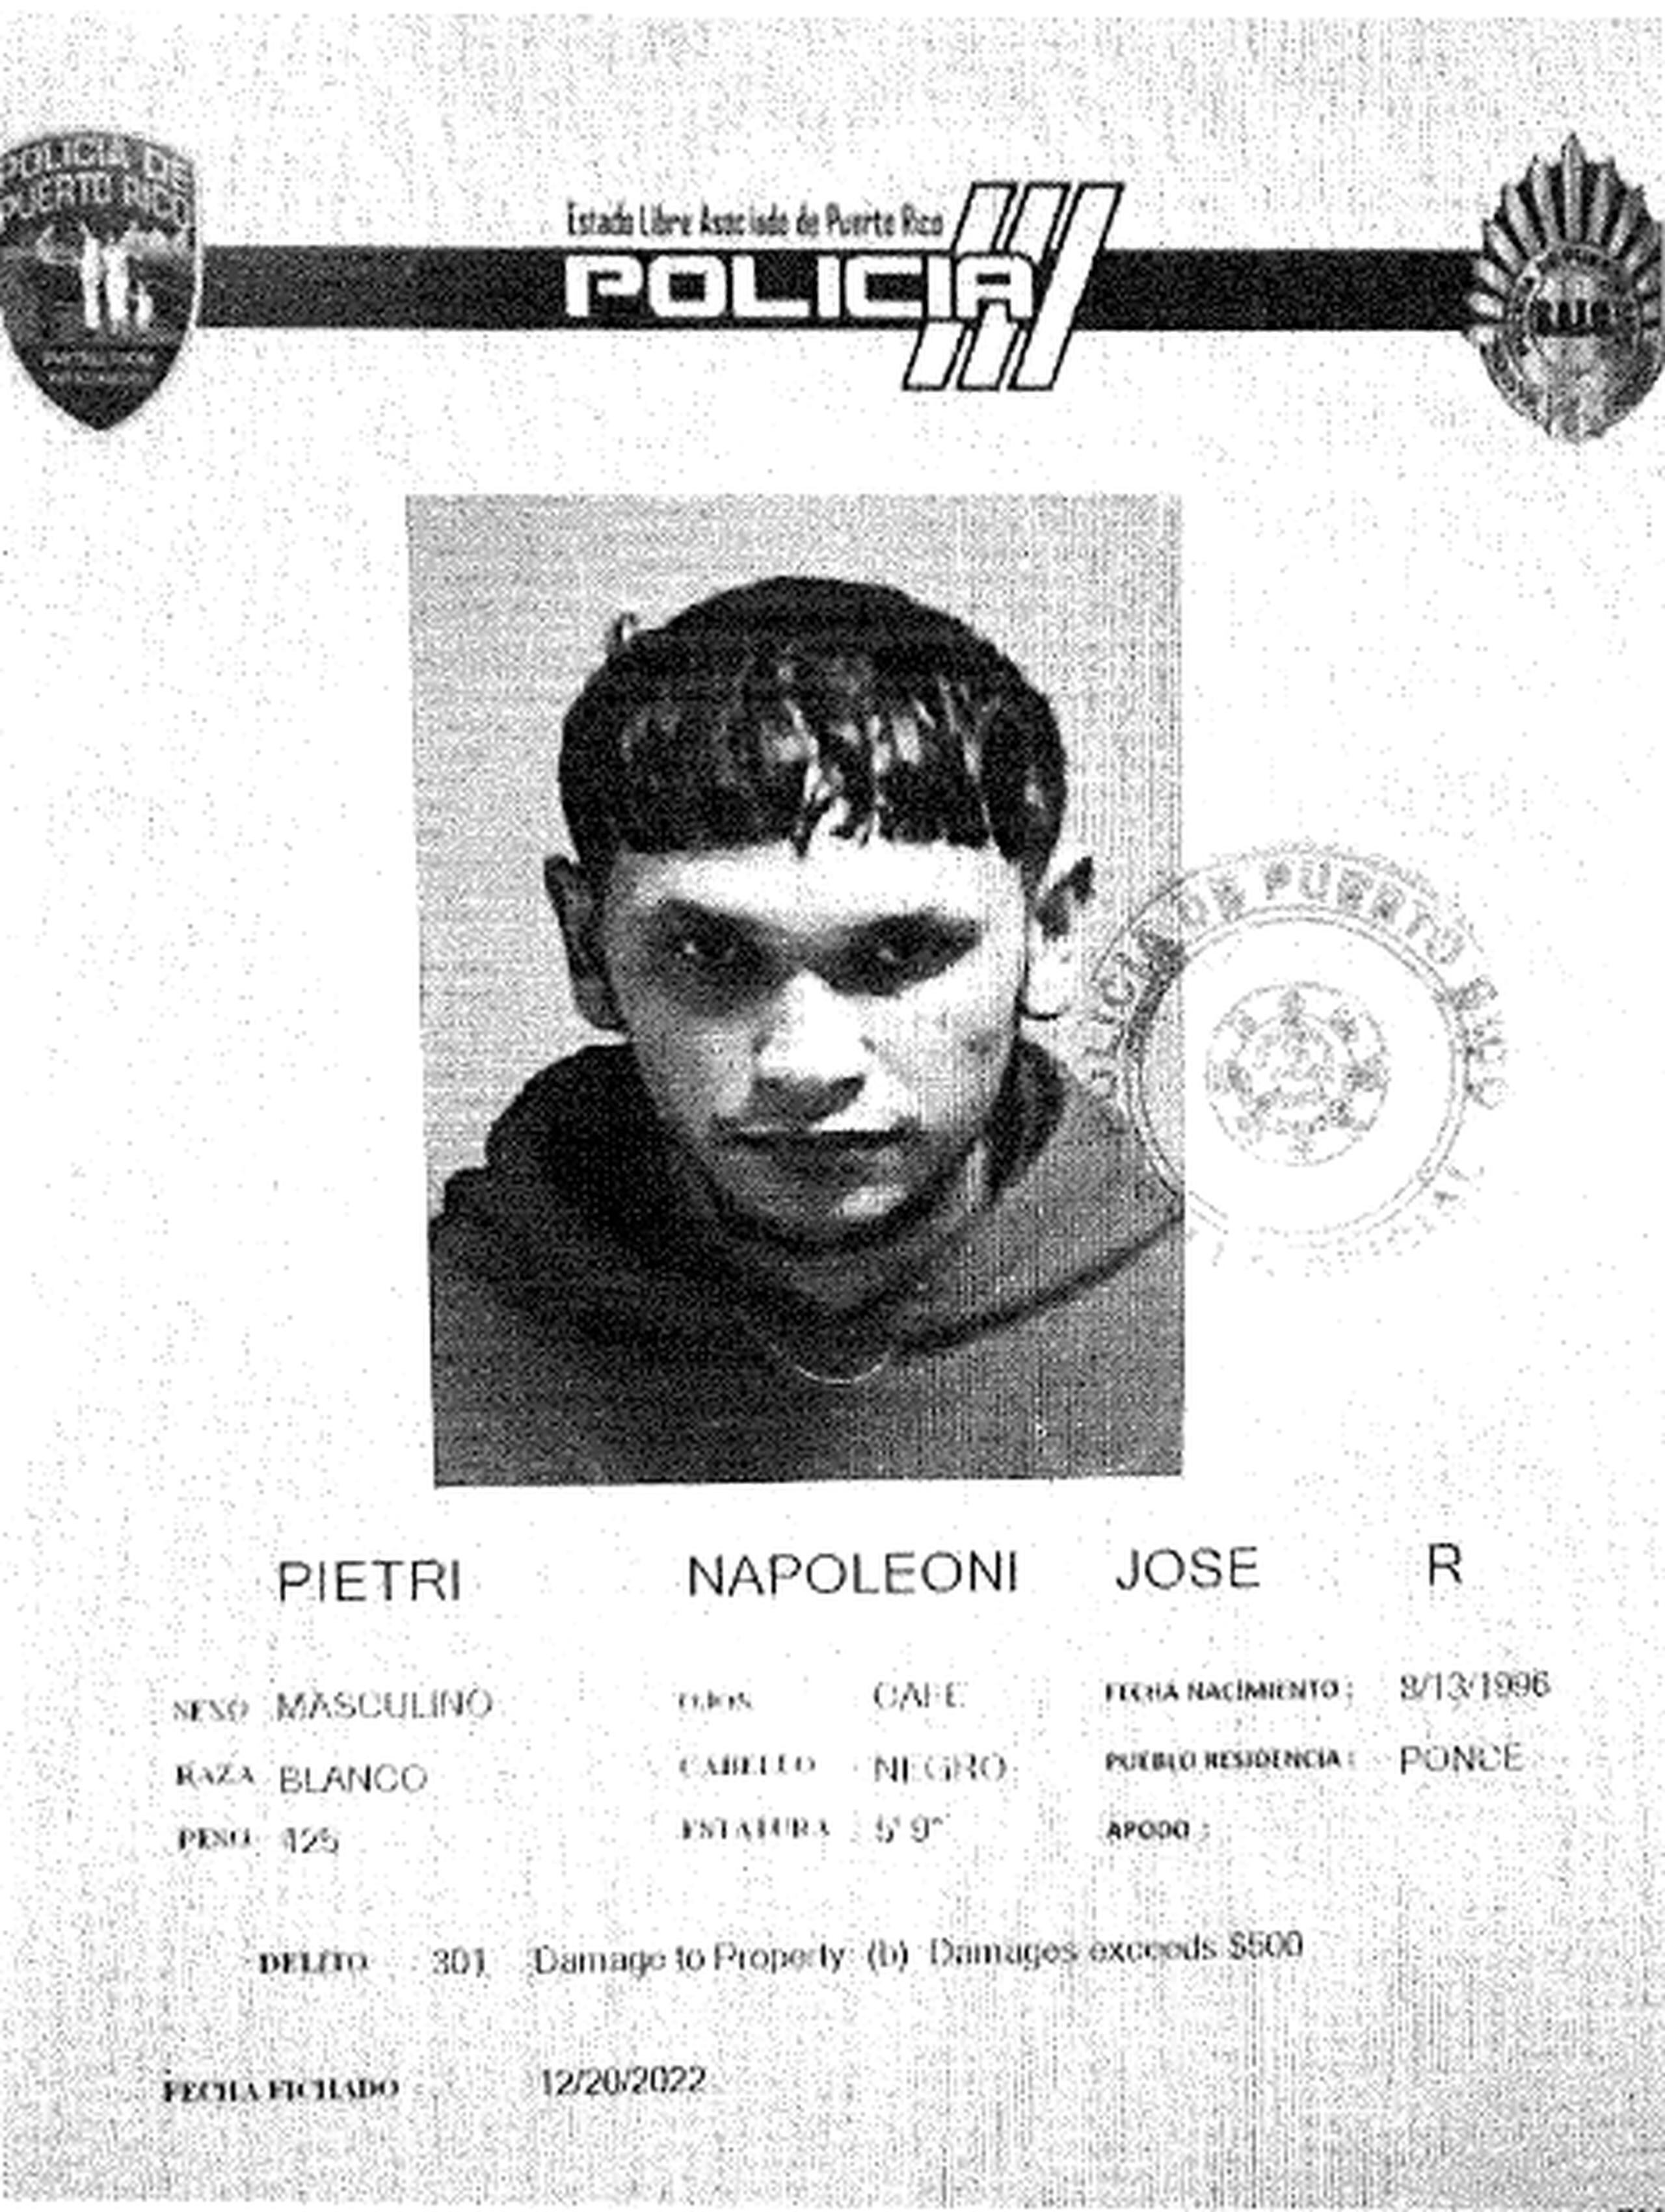 Ficha policíaca de José Ramón Pietri Napoleoni.